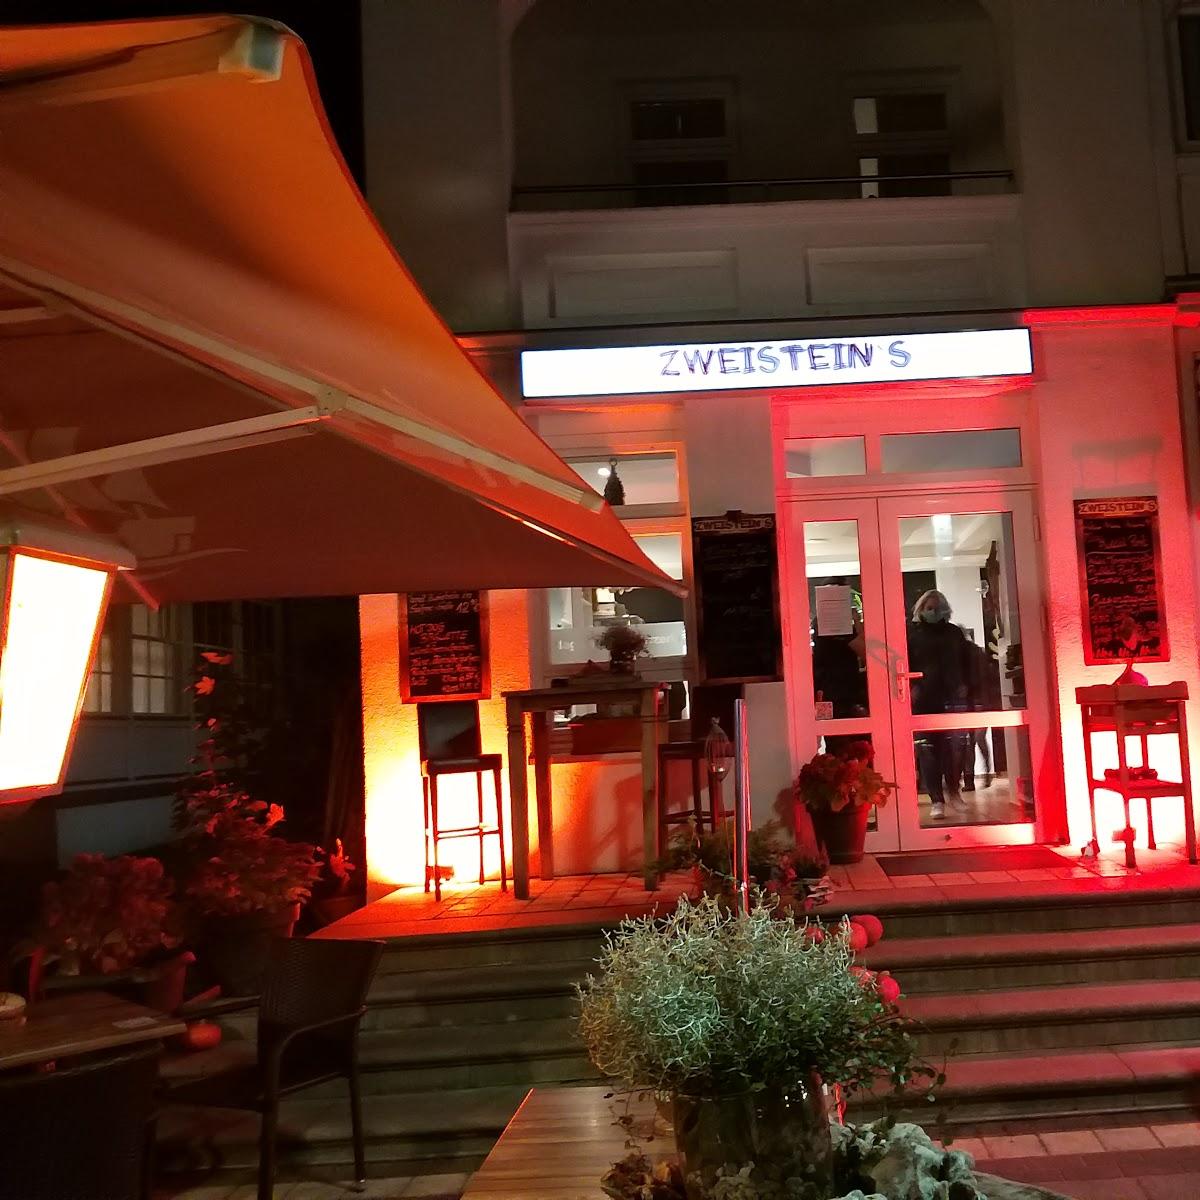 Restaurant "Zweisteins" in  Sellin